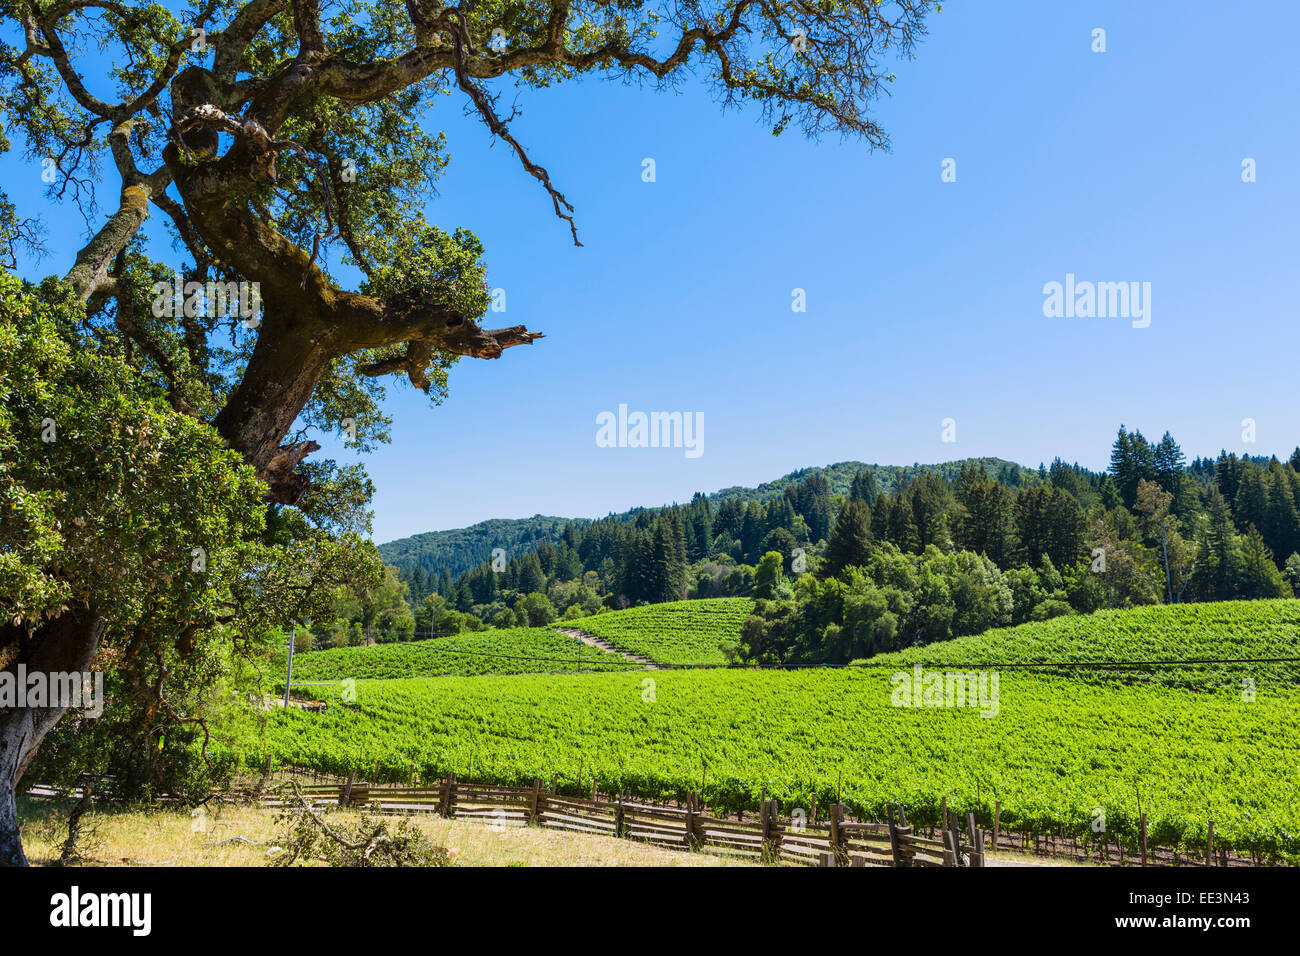 Vignoble de Jack London State Park, Glen Ellen, Sonoma Valley, Vin de pays, le nord de la Californie, USA Banque D'Images